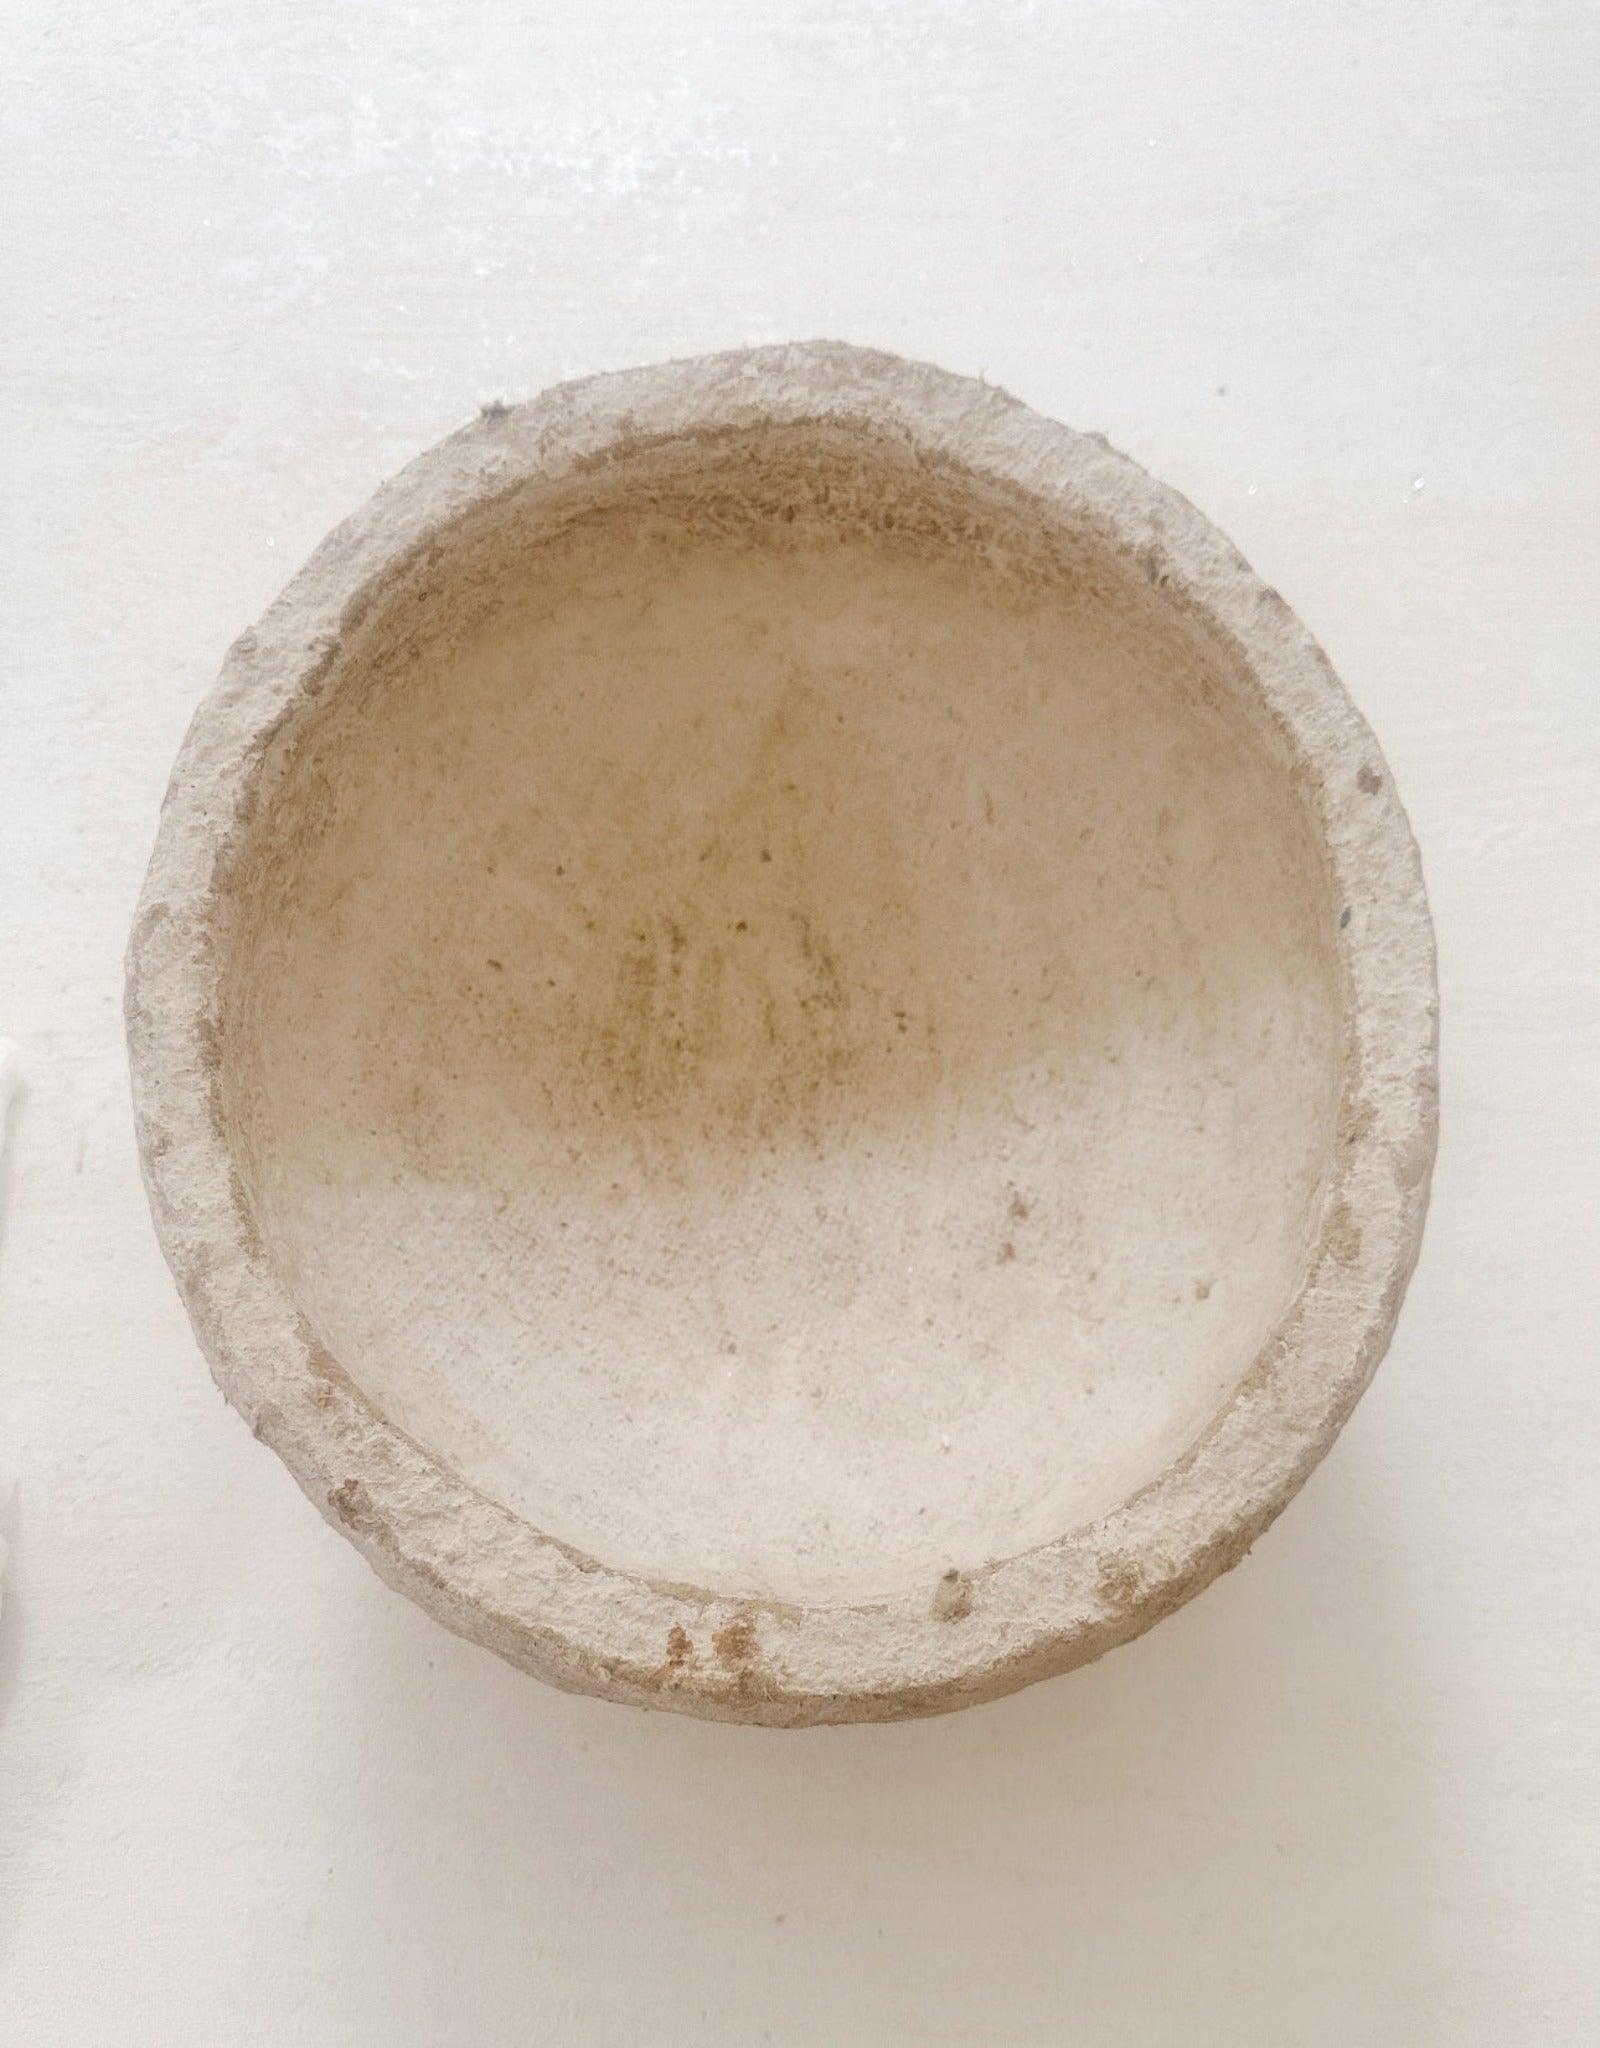 Vintage Paper-Mache Handmade Bowl, Papier-Mache Decorative Bowl - Ivory Lane Home